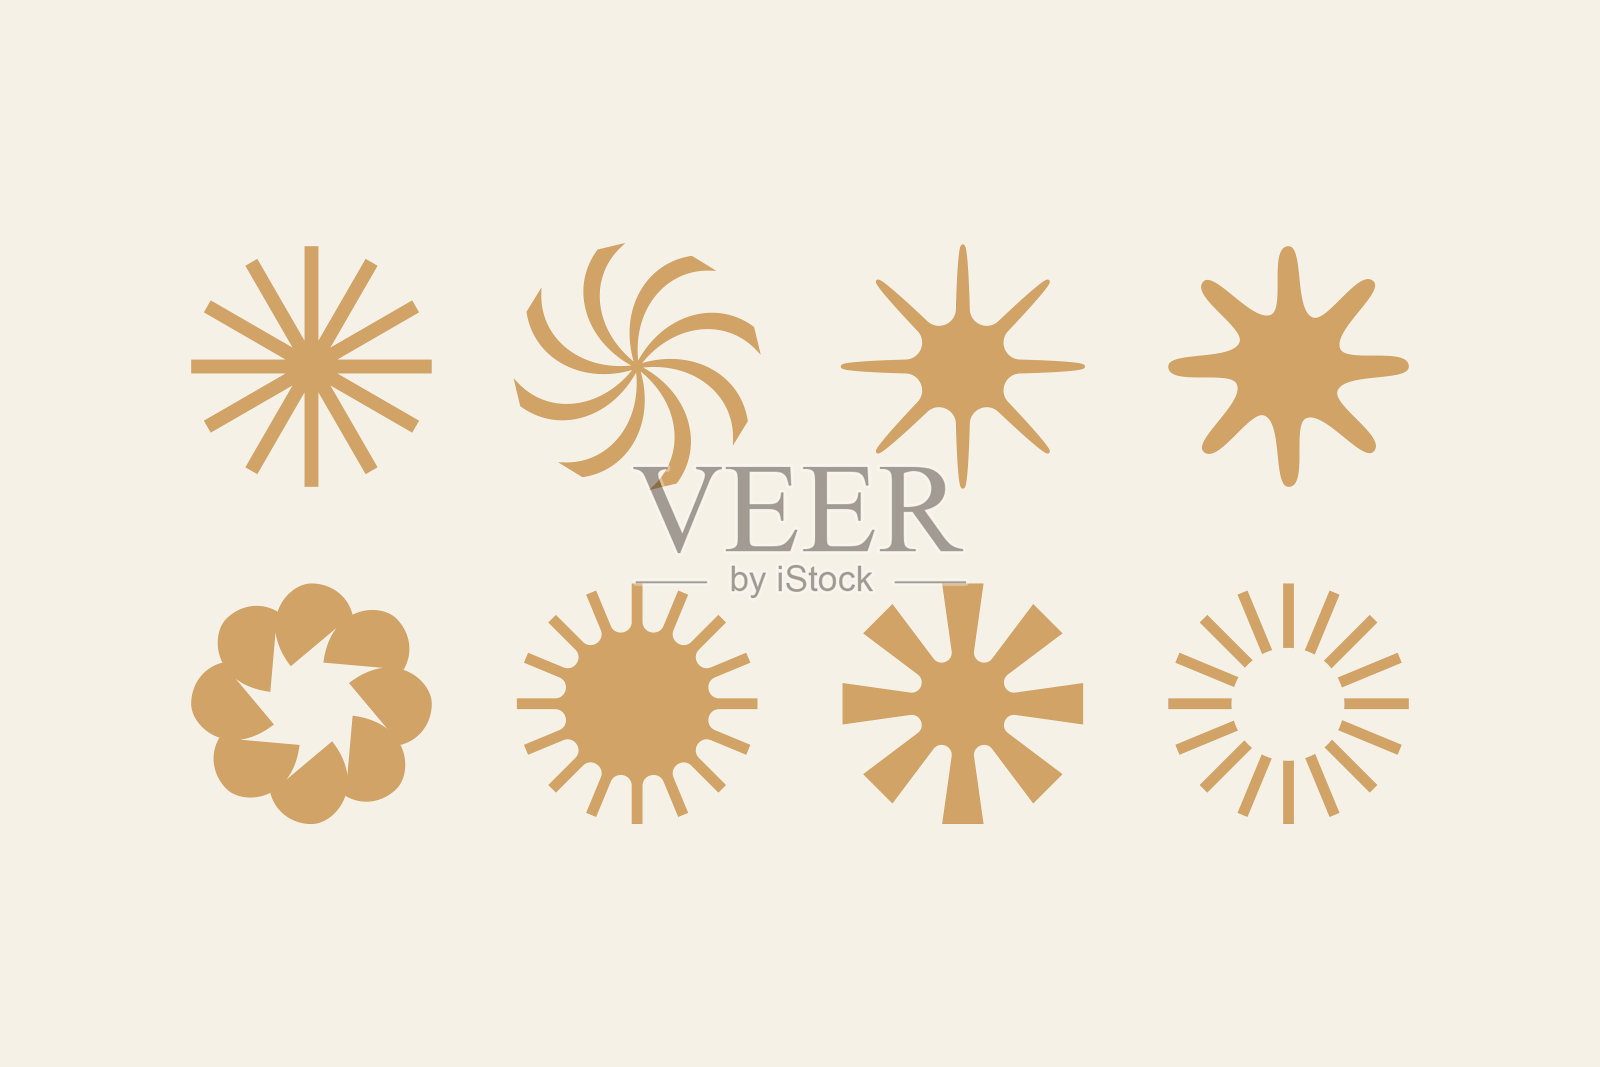 矢量插图在简单的风格-设计模板-太阳和鲜花对象插画图片素材